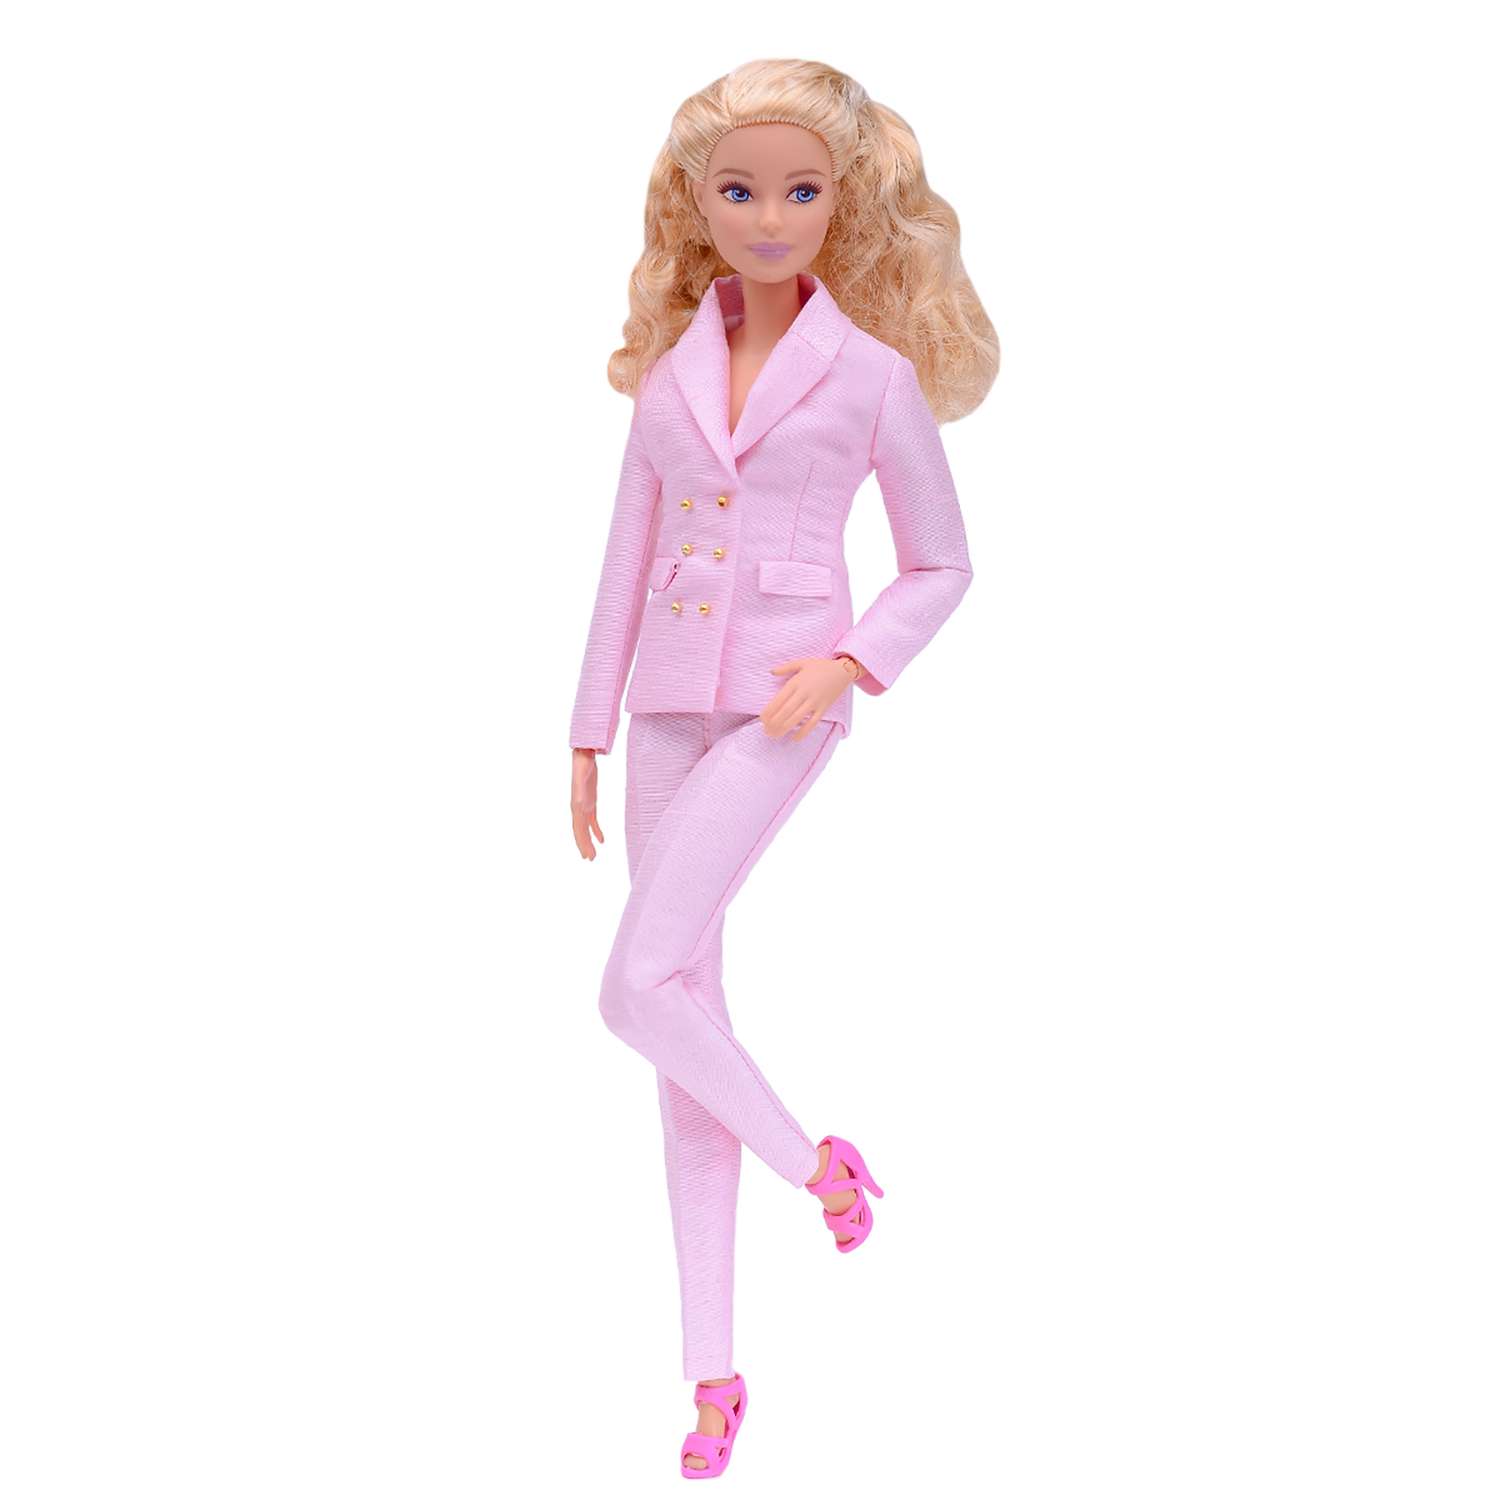 Шелковый брючный костюм Эленприв Светло-розовый для куклы 29 см типа Барби FA-011-04 - фото 1